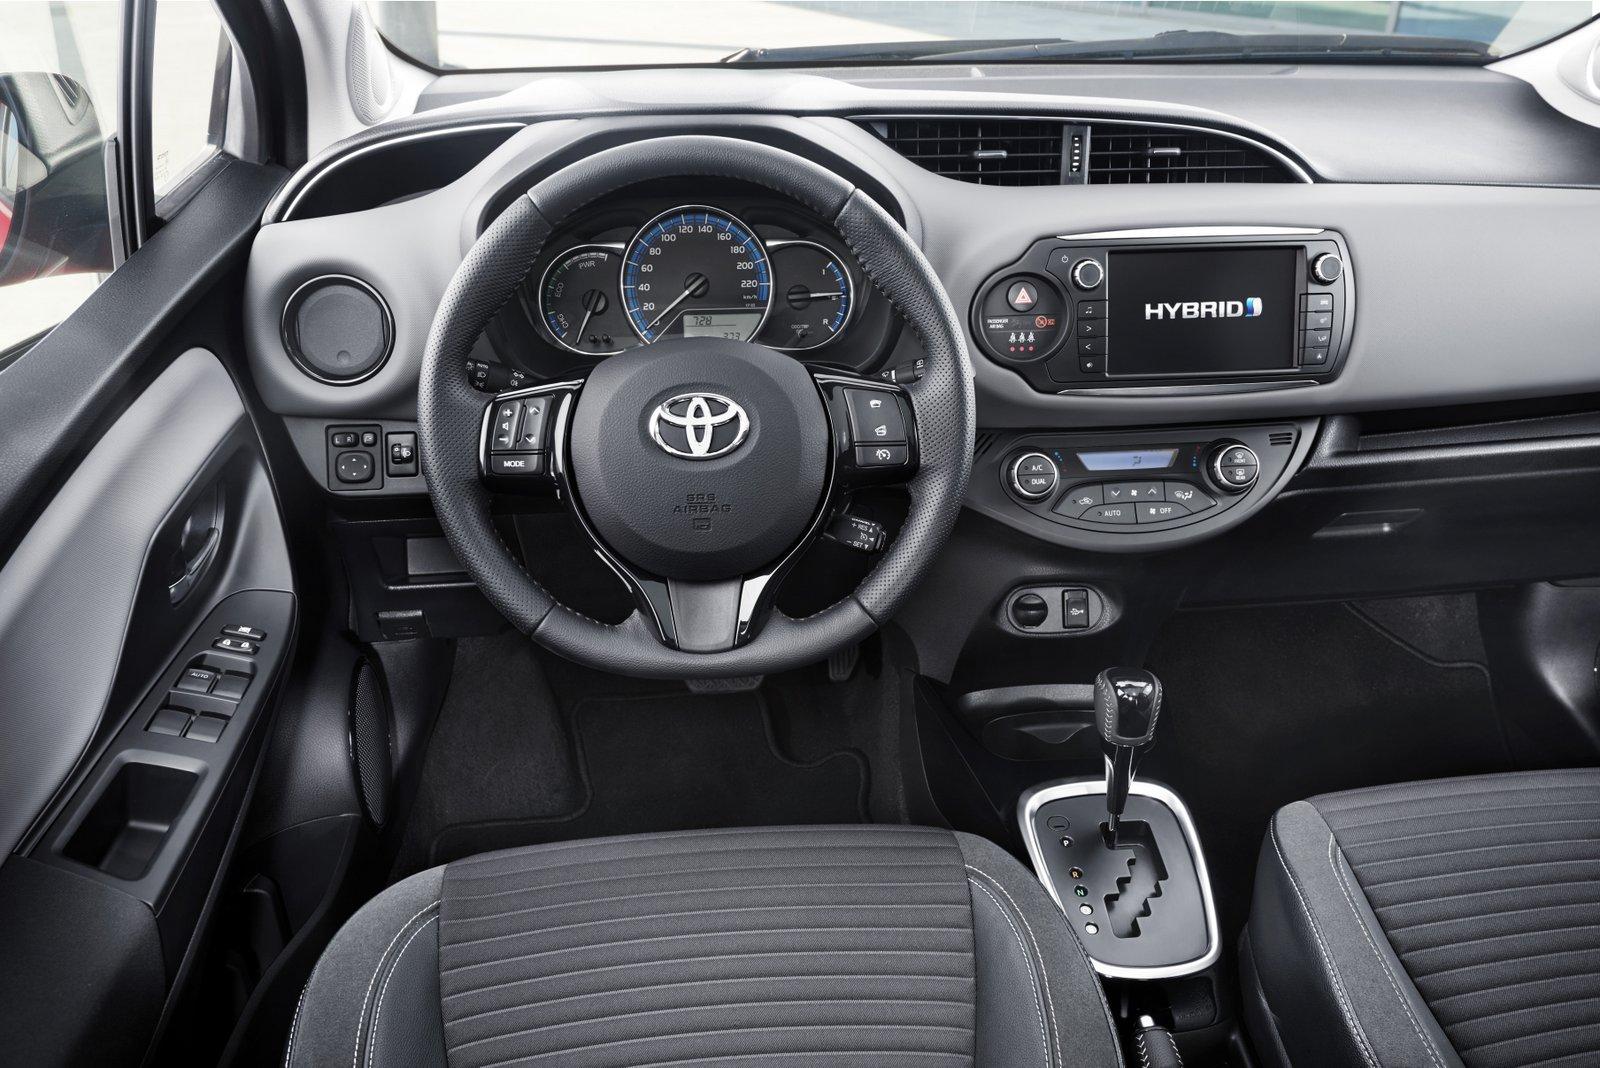 Điểm nhấn khác trên Toyota Yaris 2016 là vô lăng 3 chấu có chi tiết mạ bạc. Phiên bản 1.3G của Toyota Yaris 2016 có vô lăng bọc da tích hợp các nút bấm điều khiển hệ thống âm thanh và giải trí rất tiện dụng. Phiên bản 1.3E lại không được trang bị hệ thống âm thanh trên vô lăng.